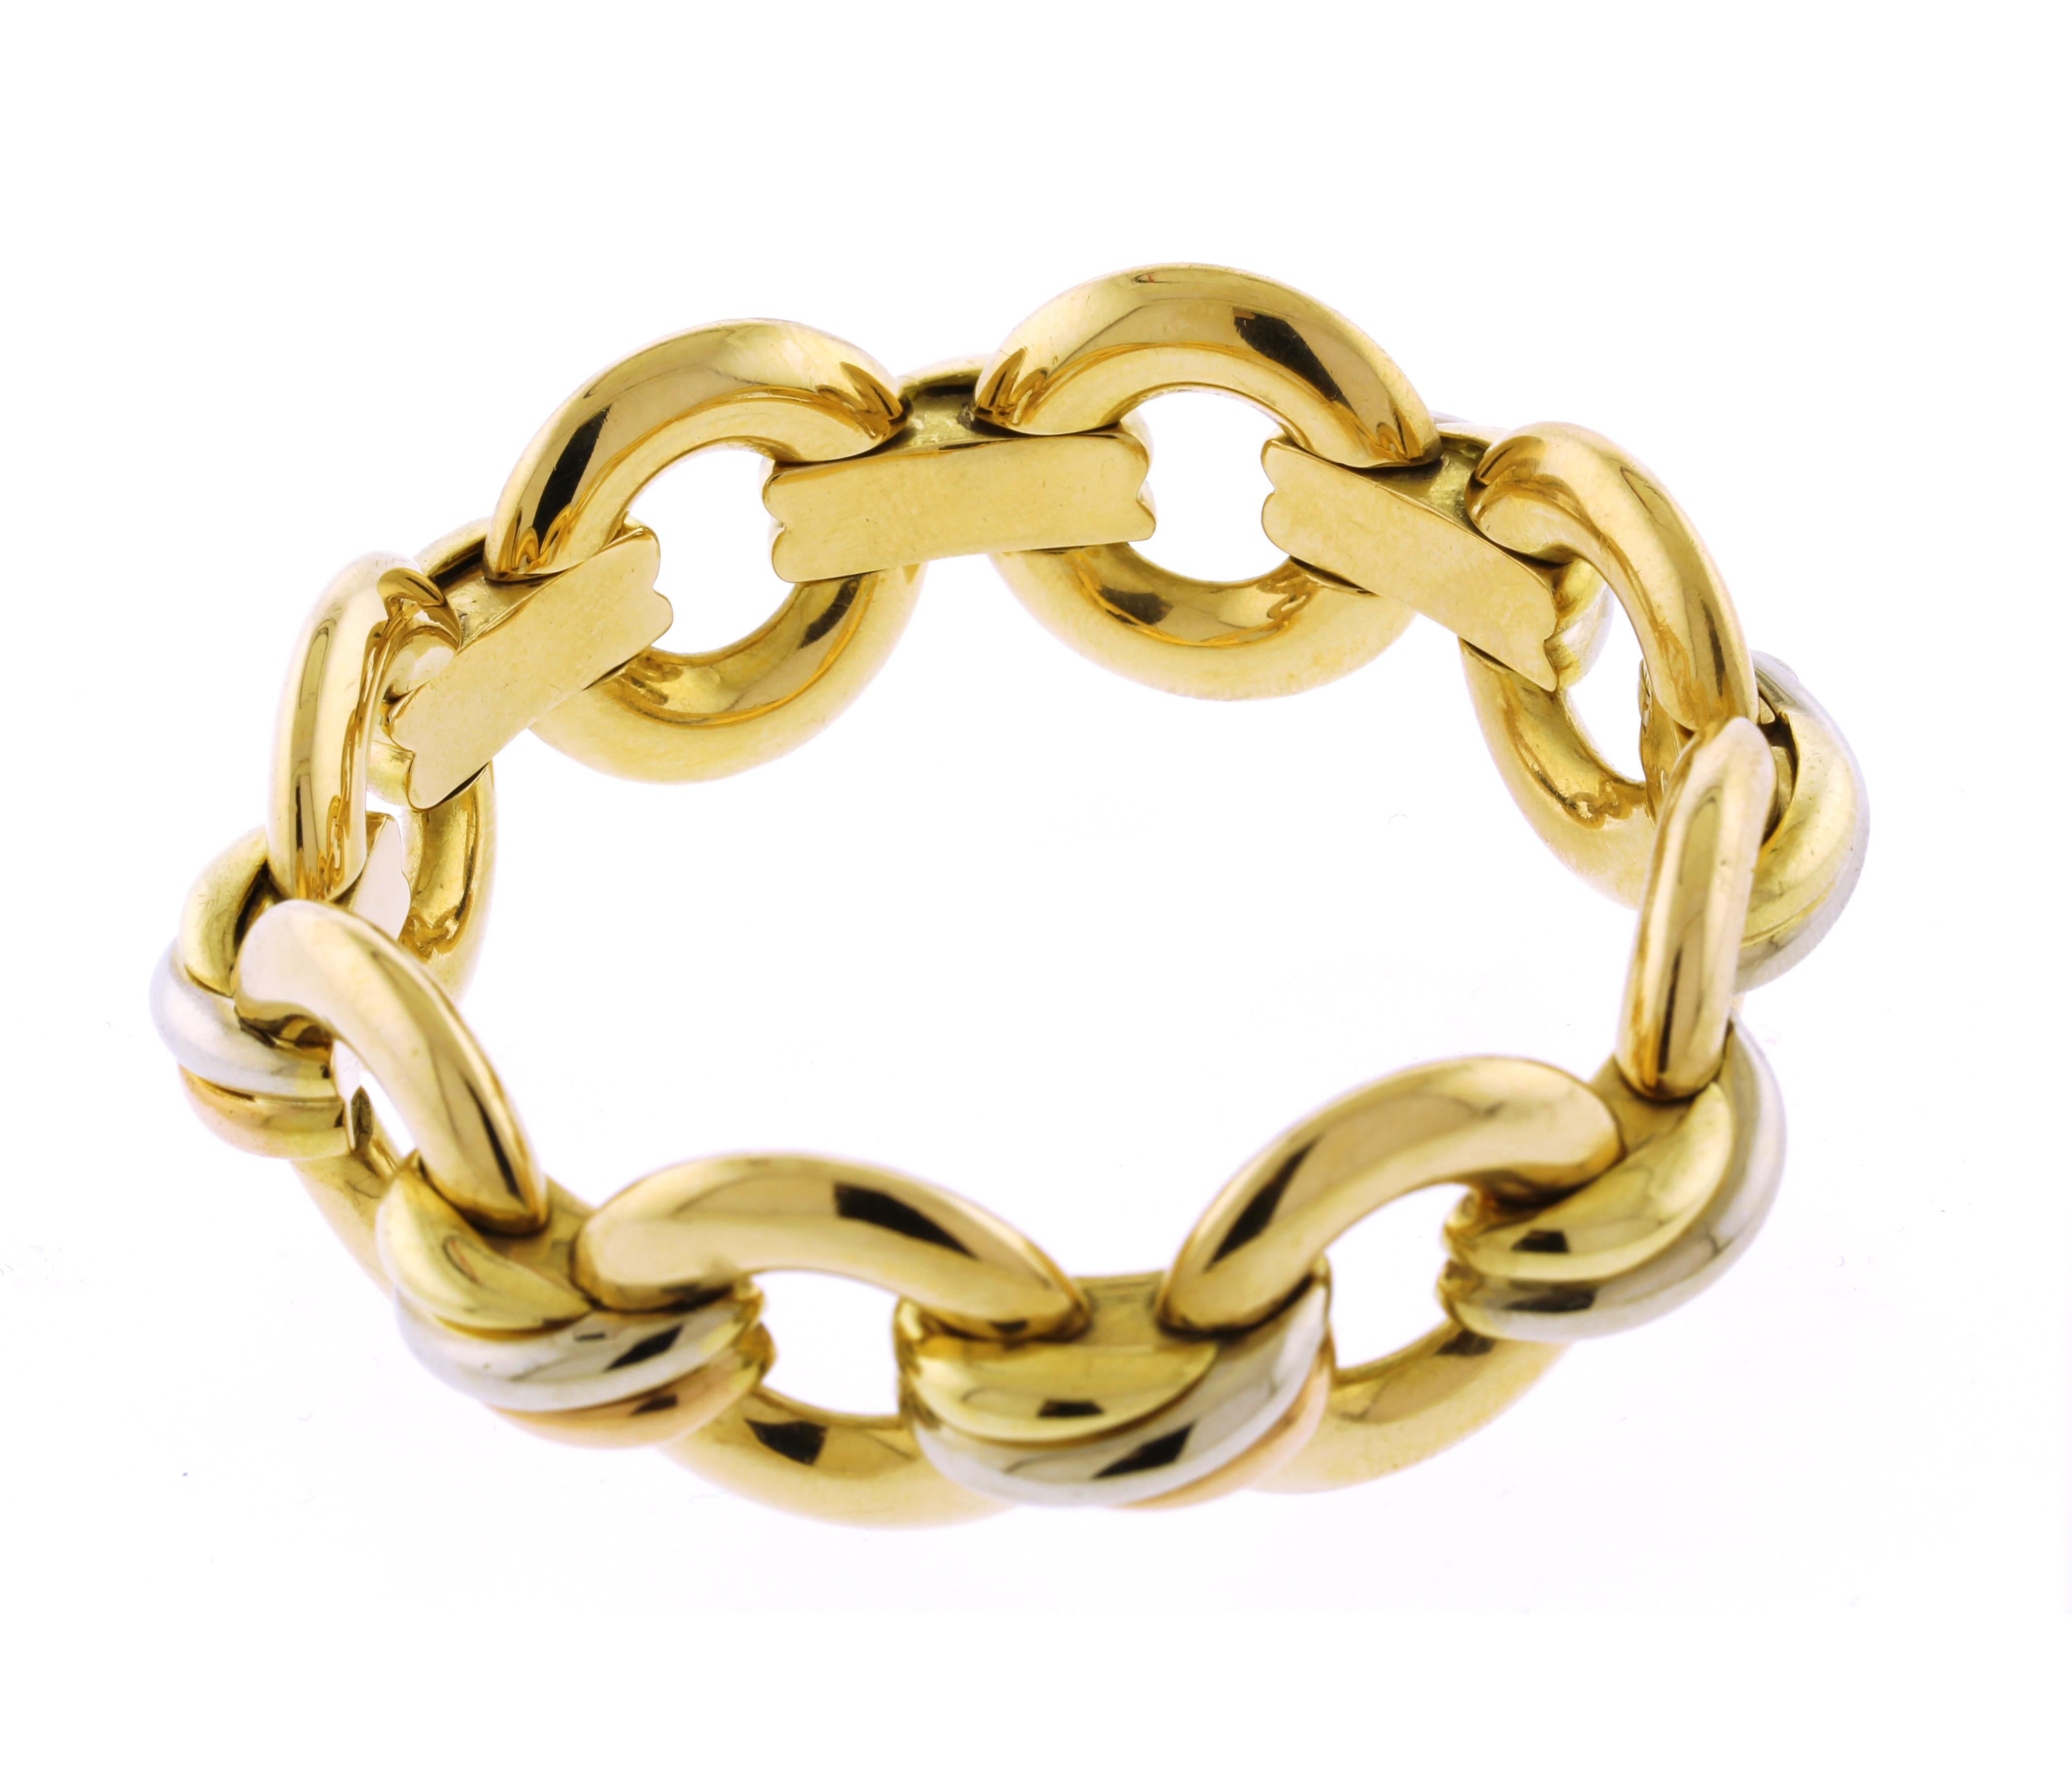 La collection Trinity a été présentée pour la première fois en 1924 et se distingue par ses trois bracelets entrelacés, chacun fabriqué dans une couleur d'or différente : l'or jaune représentant la fidélité, l'or rose l'amour et l'or blanc l'amitié.